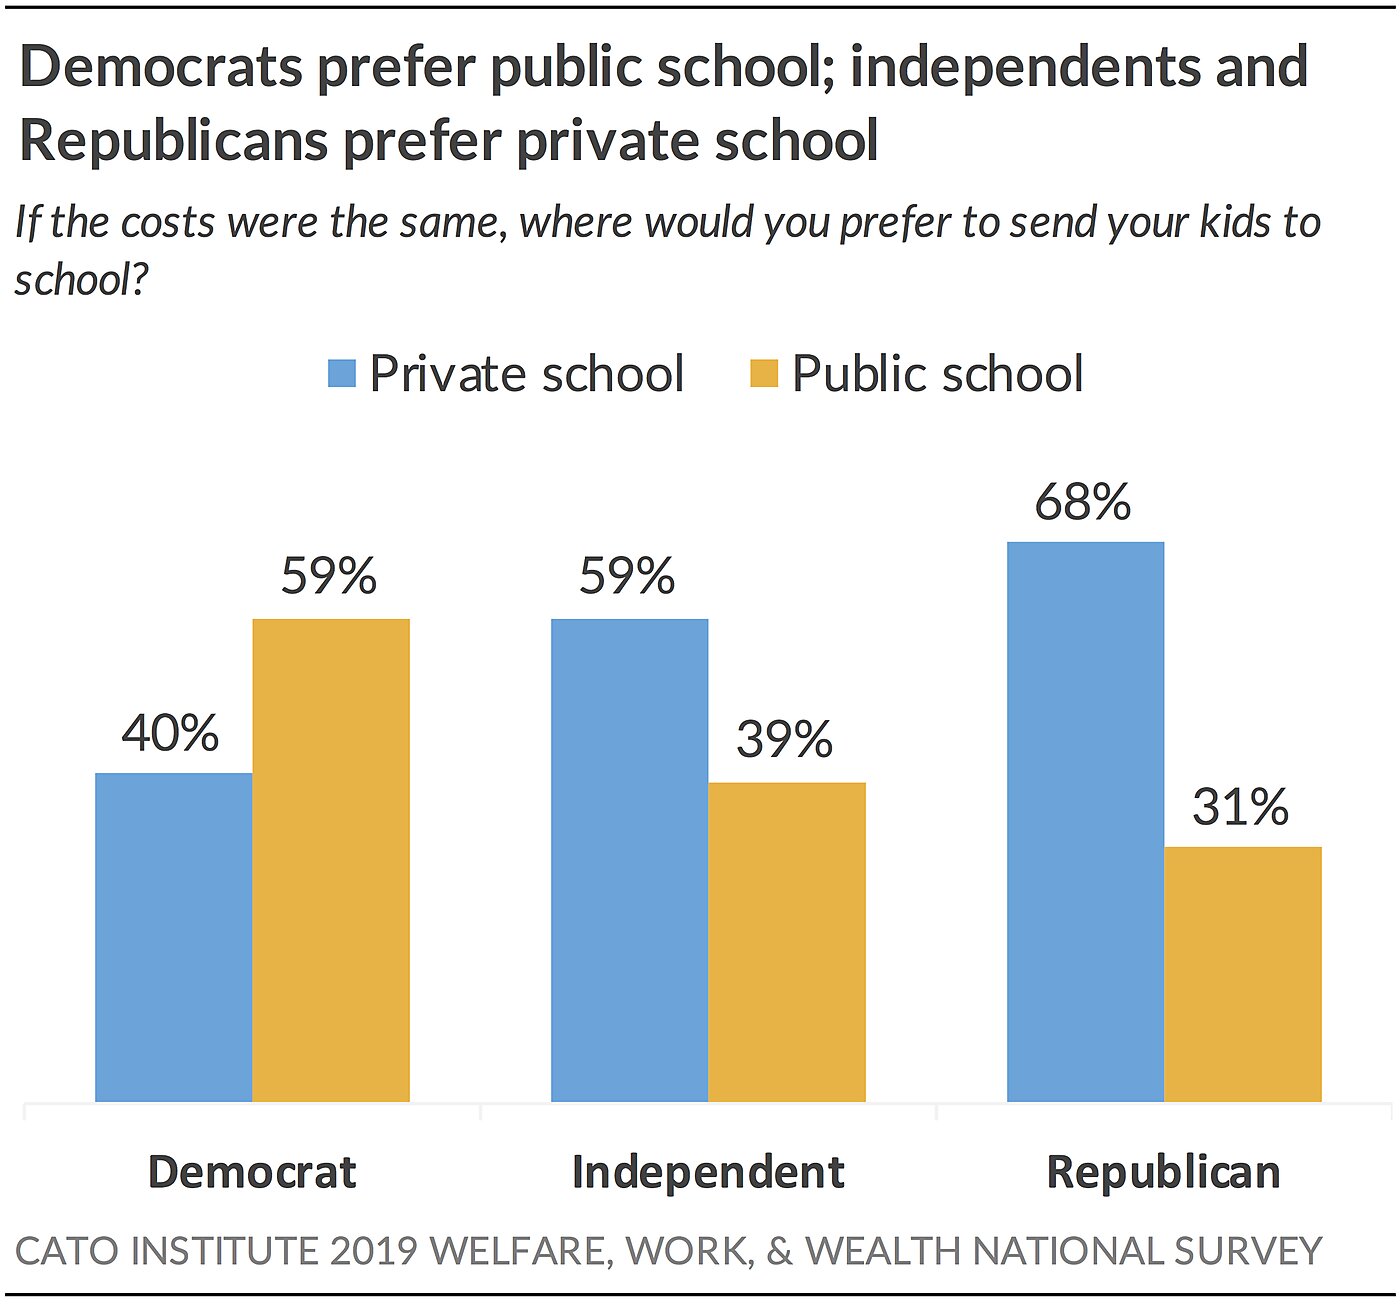 Democrats prefer public school; others private